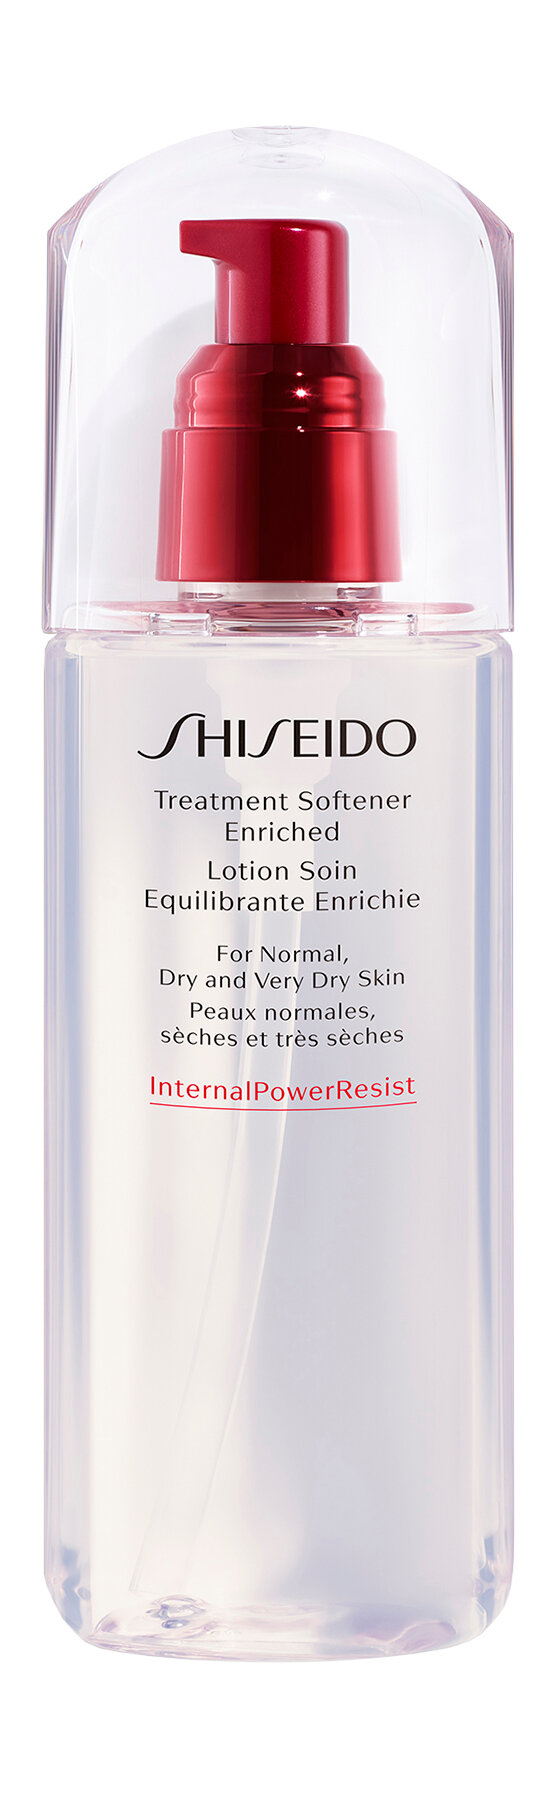 Увлажняющий обогащенный софтнер для лица Shiseido Defend Preparation Treatment Softener Enriched 150 мл .